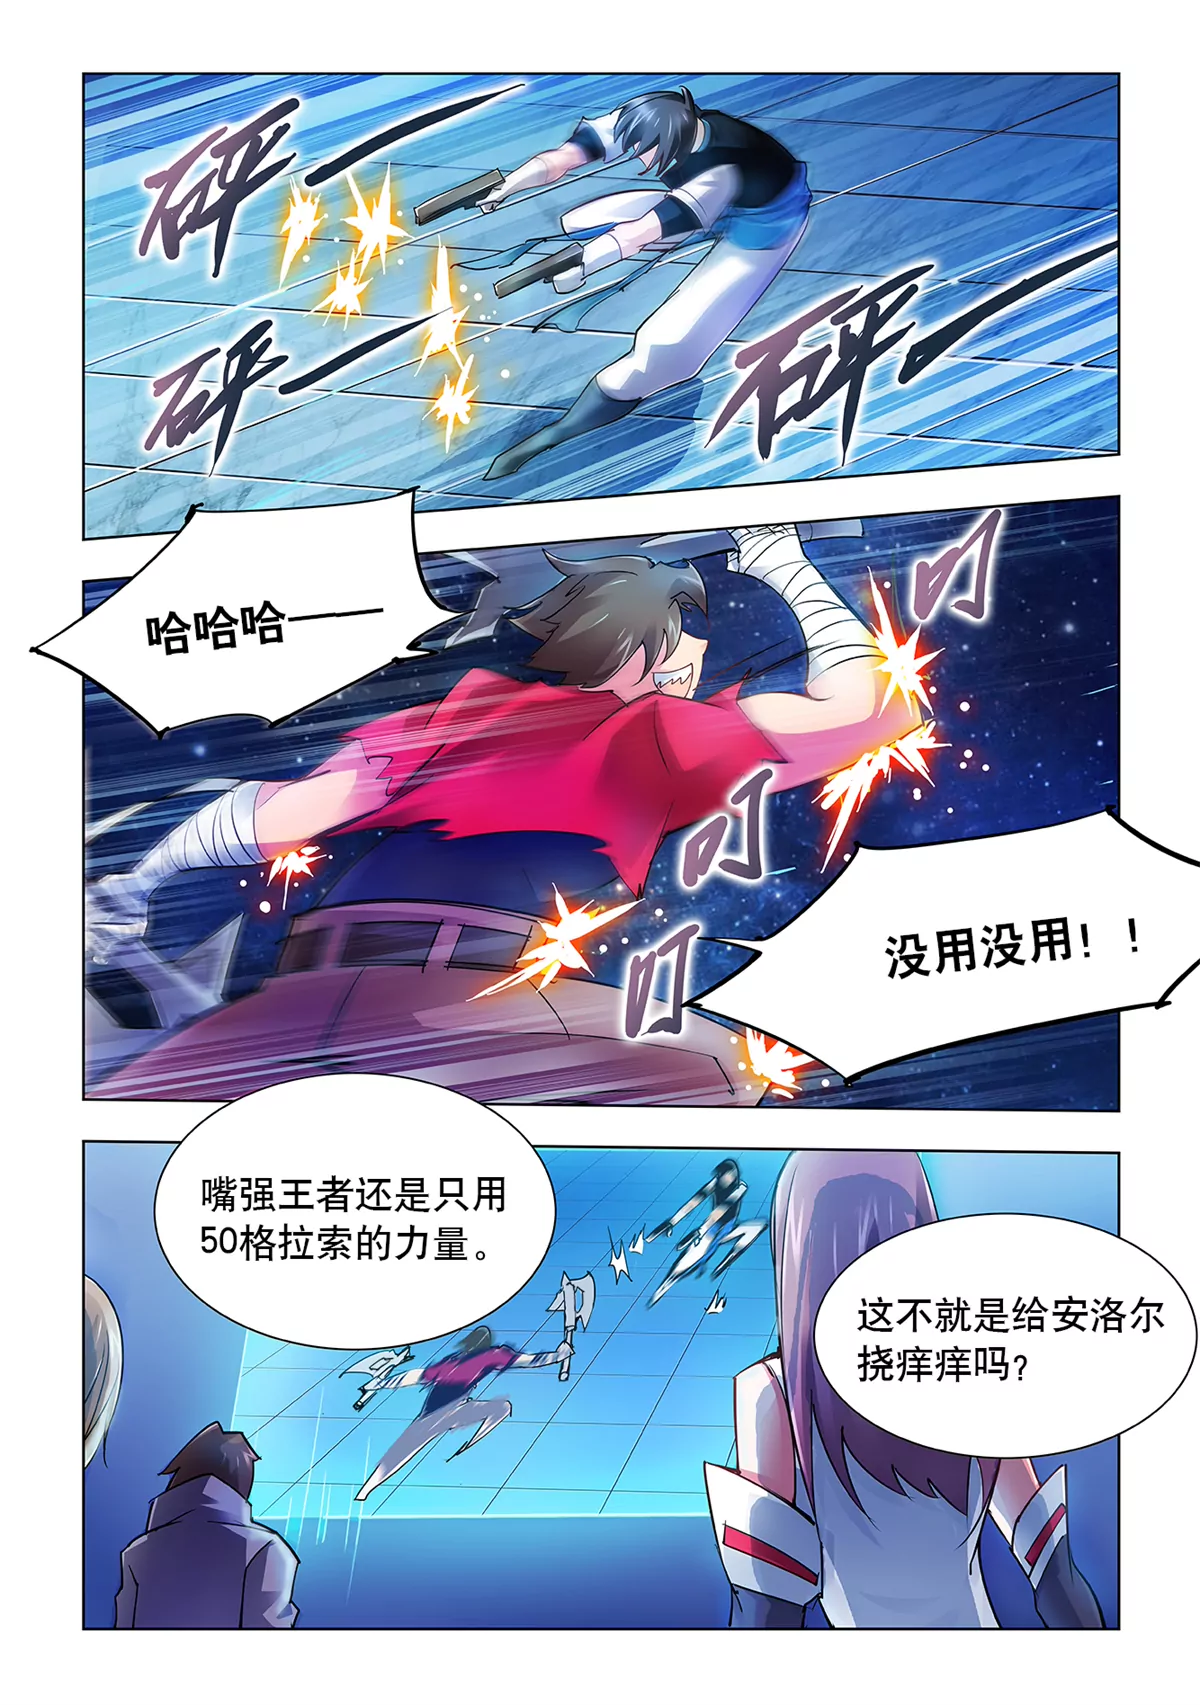 鬥戰狂潮 頁漫版 - 018 - 3